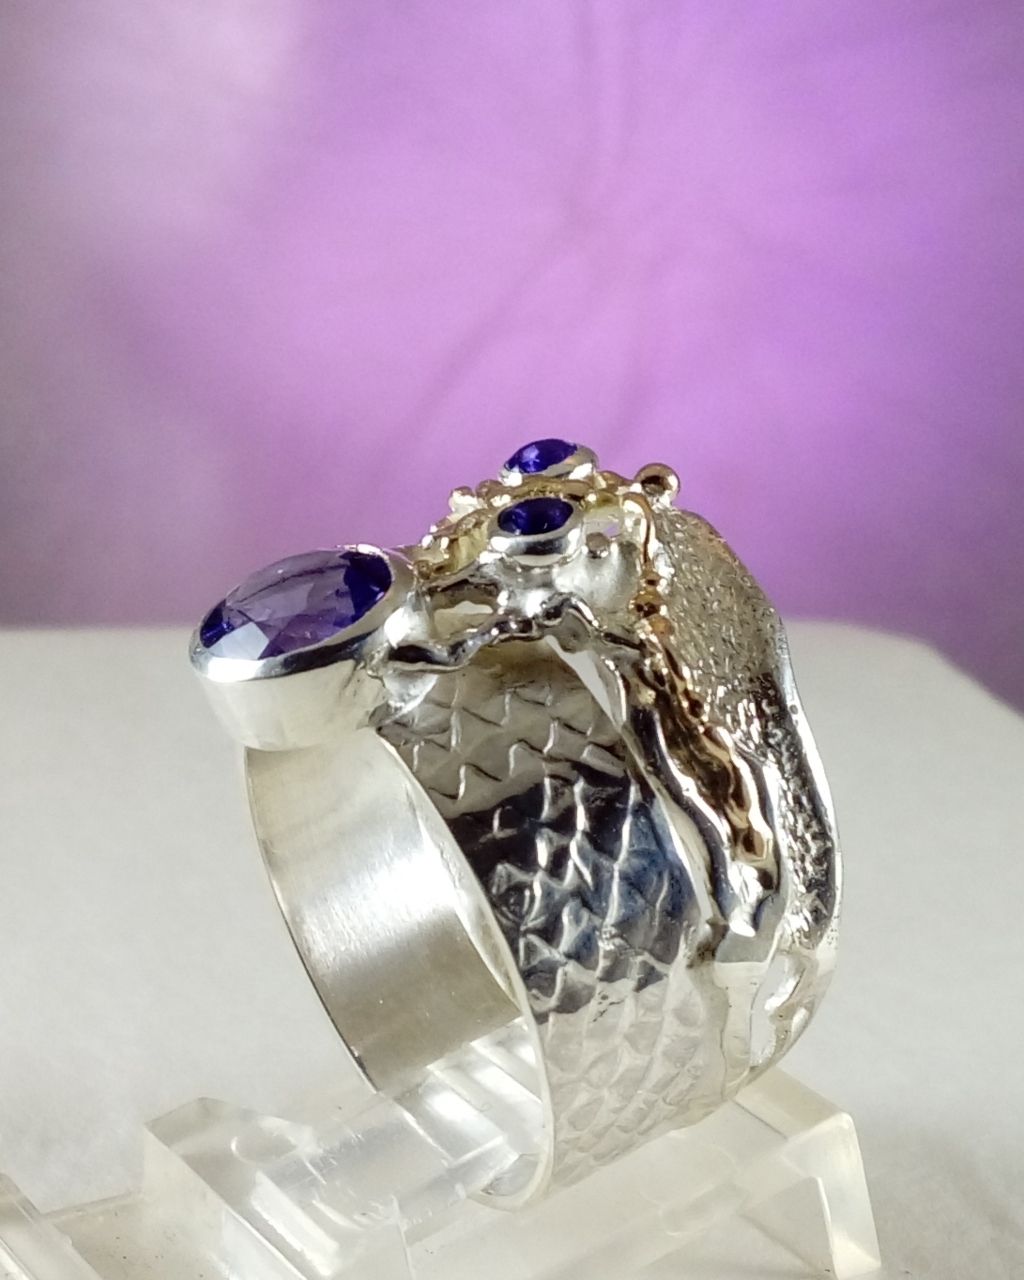 hvor kan man købe håndlavede smykker, hvor man kan købe håndlavede ringe online, købe håndlavede ring med ametyst, sølv og 14 karat guld smykker med ametyst, Gregory Pyra Piro ring 6820, håndlavede smykker med hjemlevering